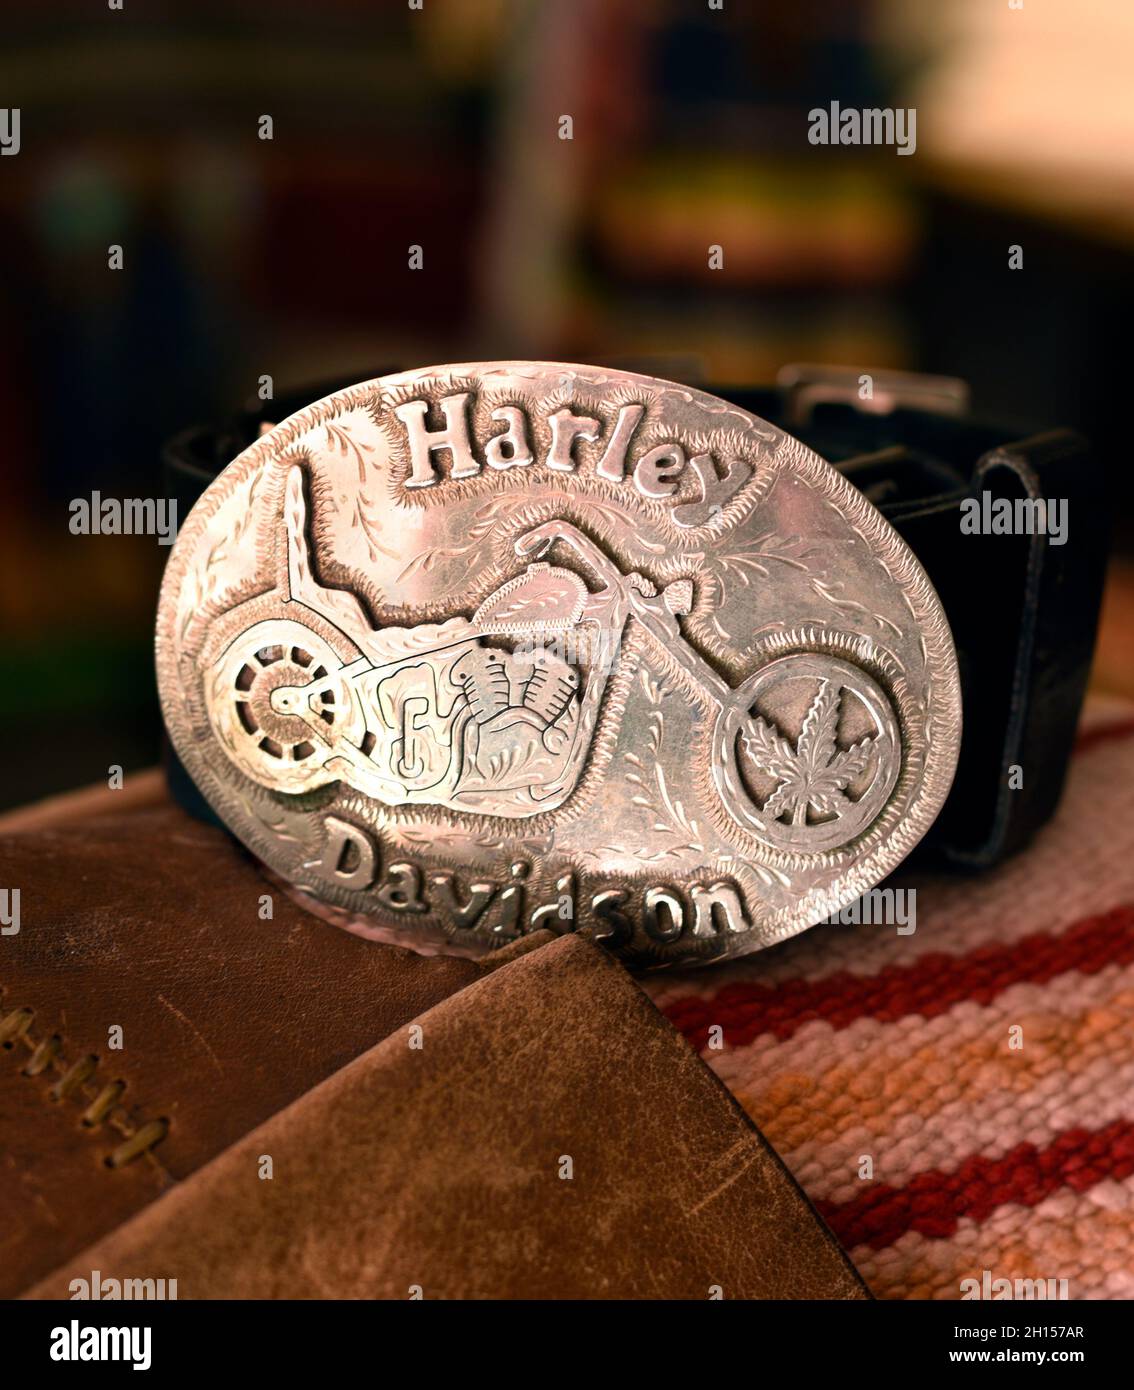 Boucle de ceinture argentée sur mesure gravée sur l'image d'une moto Harley  Davidson Photo Stock - Alamy